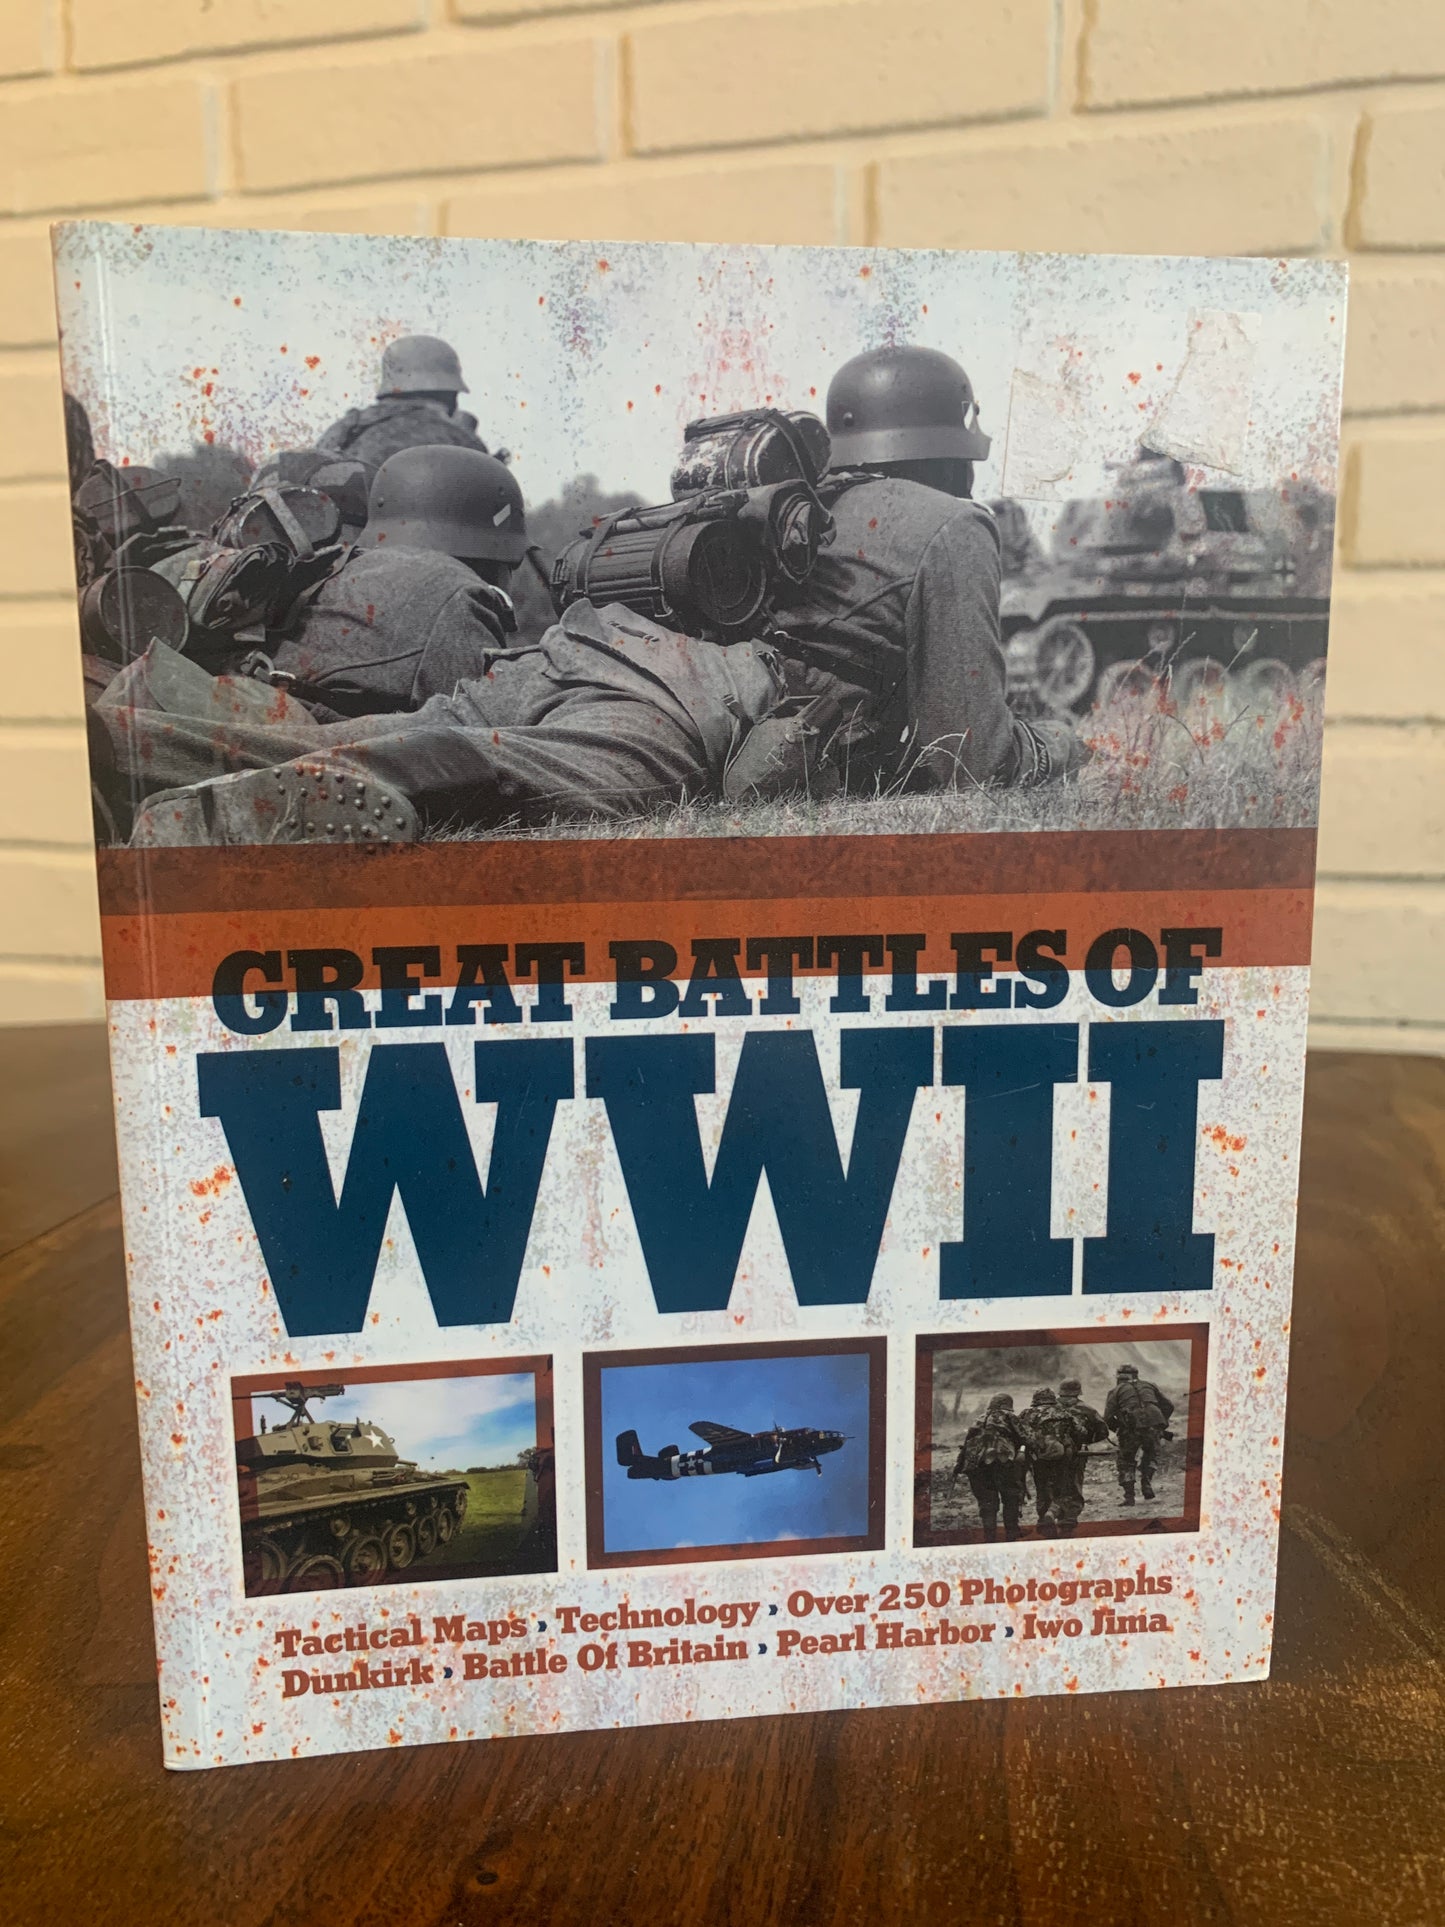 Great Battles of World War II edited by Chris Mann 2015